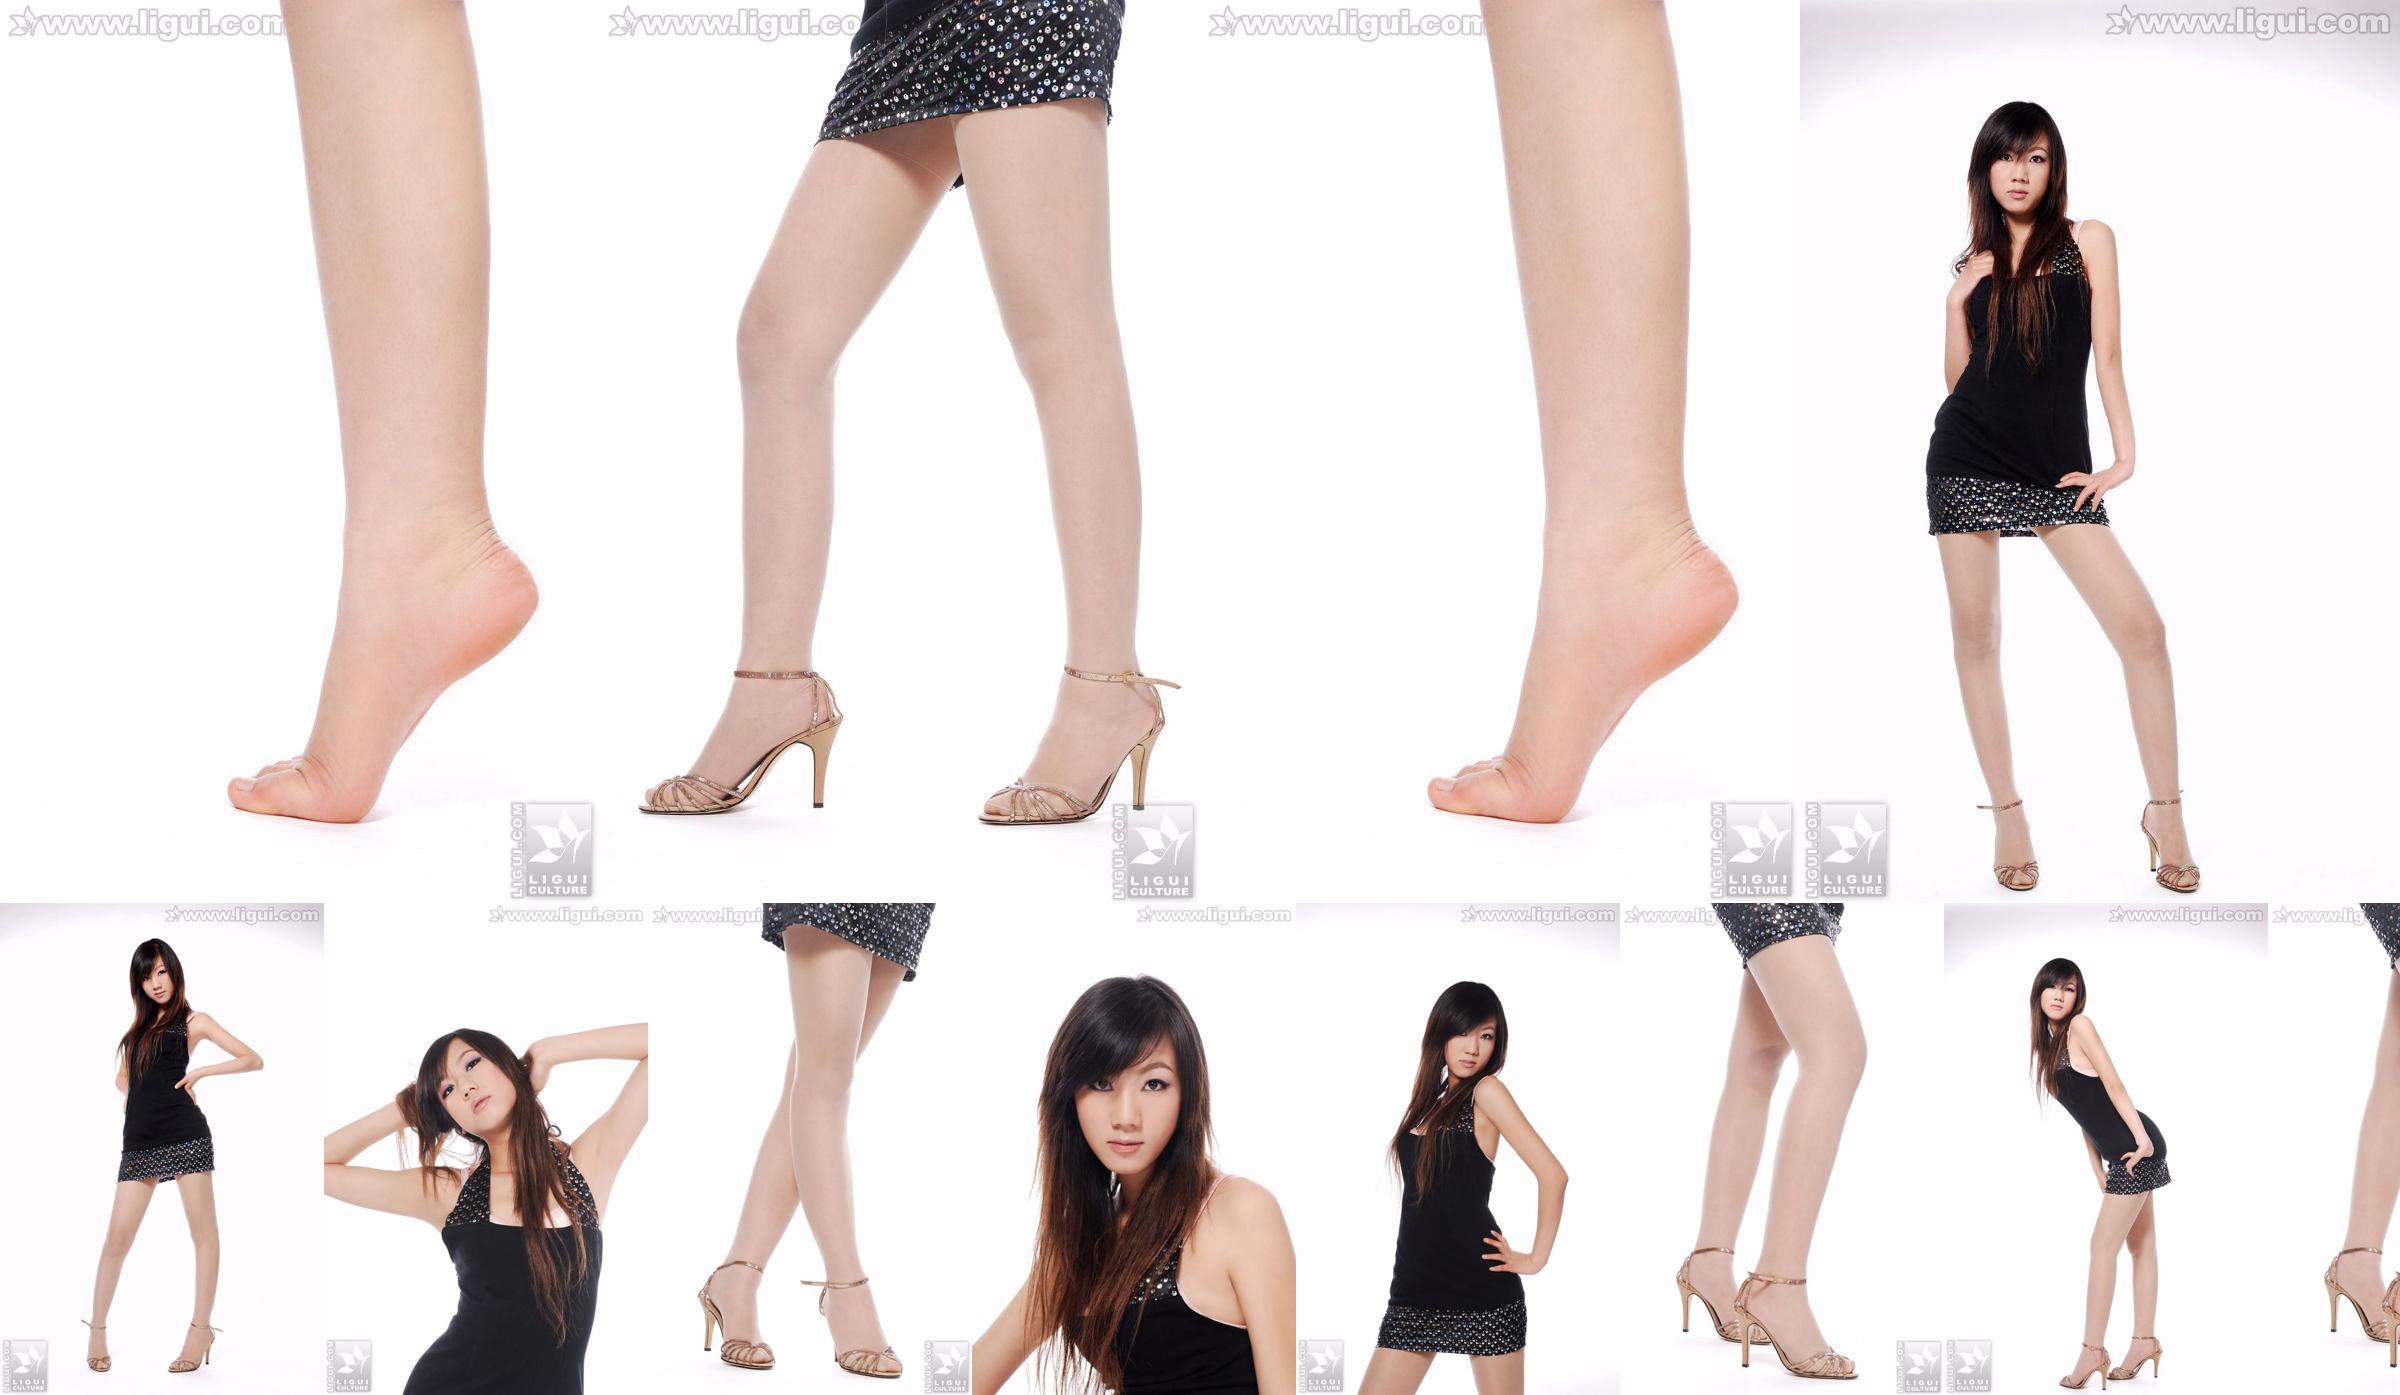 Modell Sheng Chao "Hochhackiger Jadefuß Schöne Neue Show" [Sheng LiGui] Foto von schönen Beinen und Jadefuß No.8c5748 Seite 8